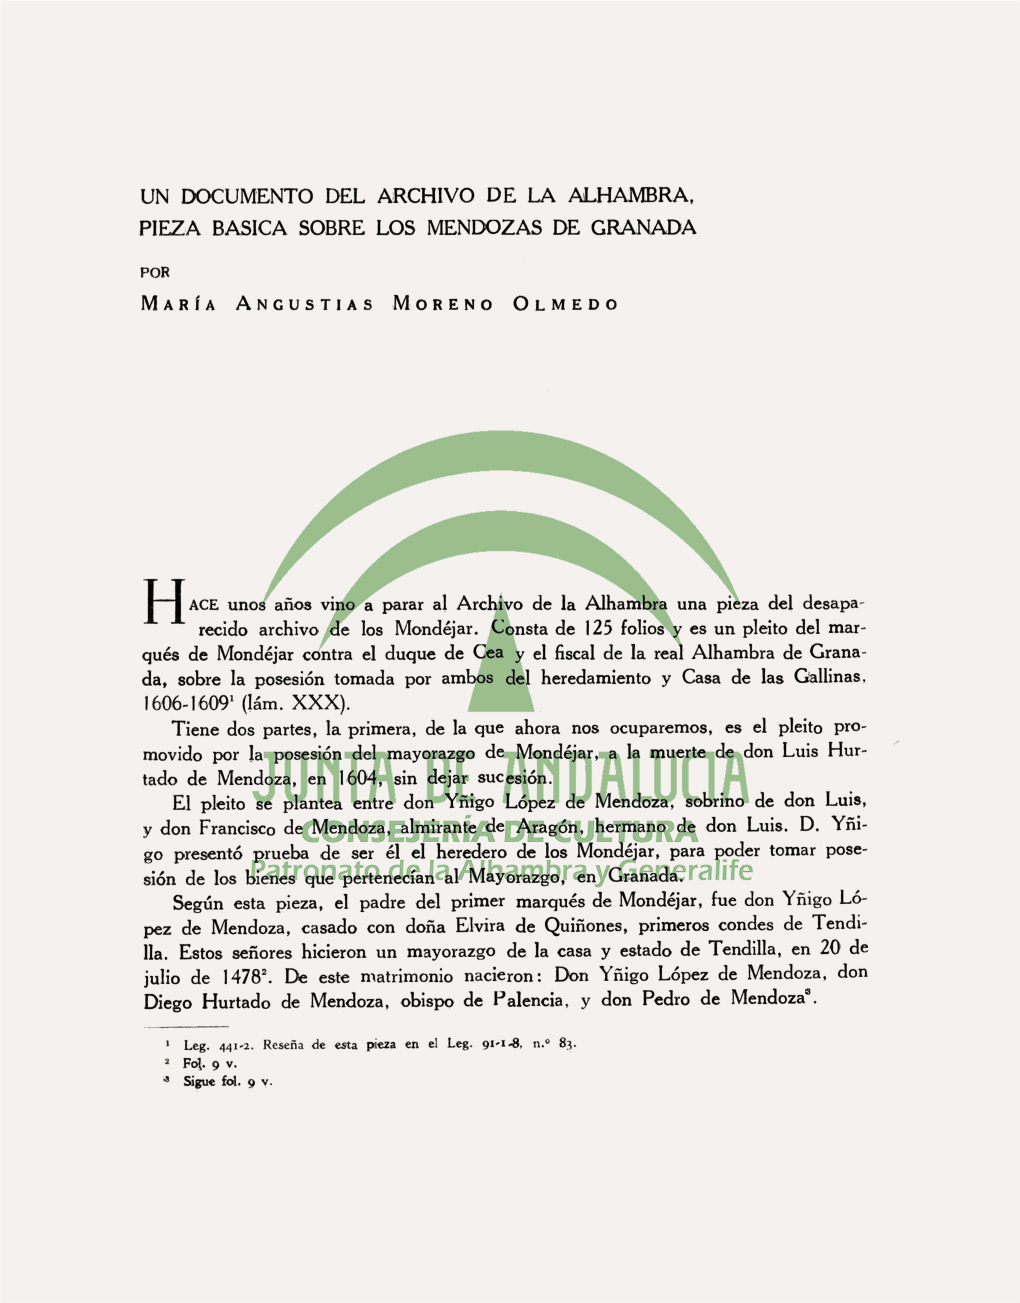 Un Documento Del Archivo De La Alhambra, Pieza Basica Sobre Los Mendozas De Granada